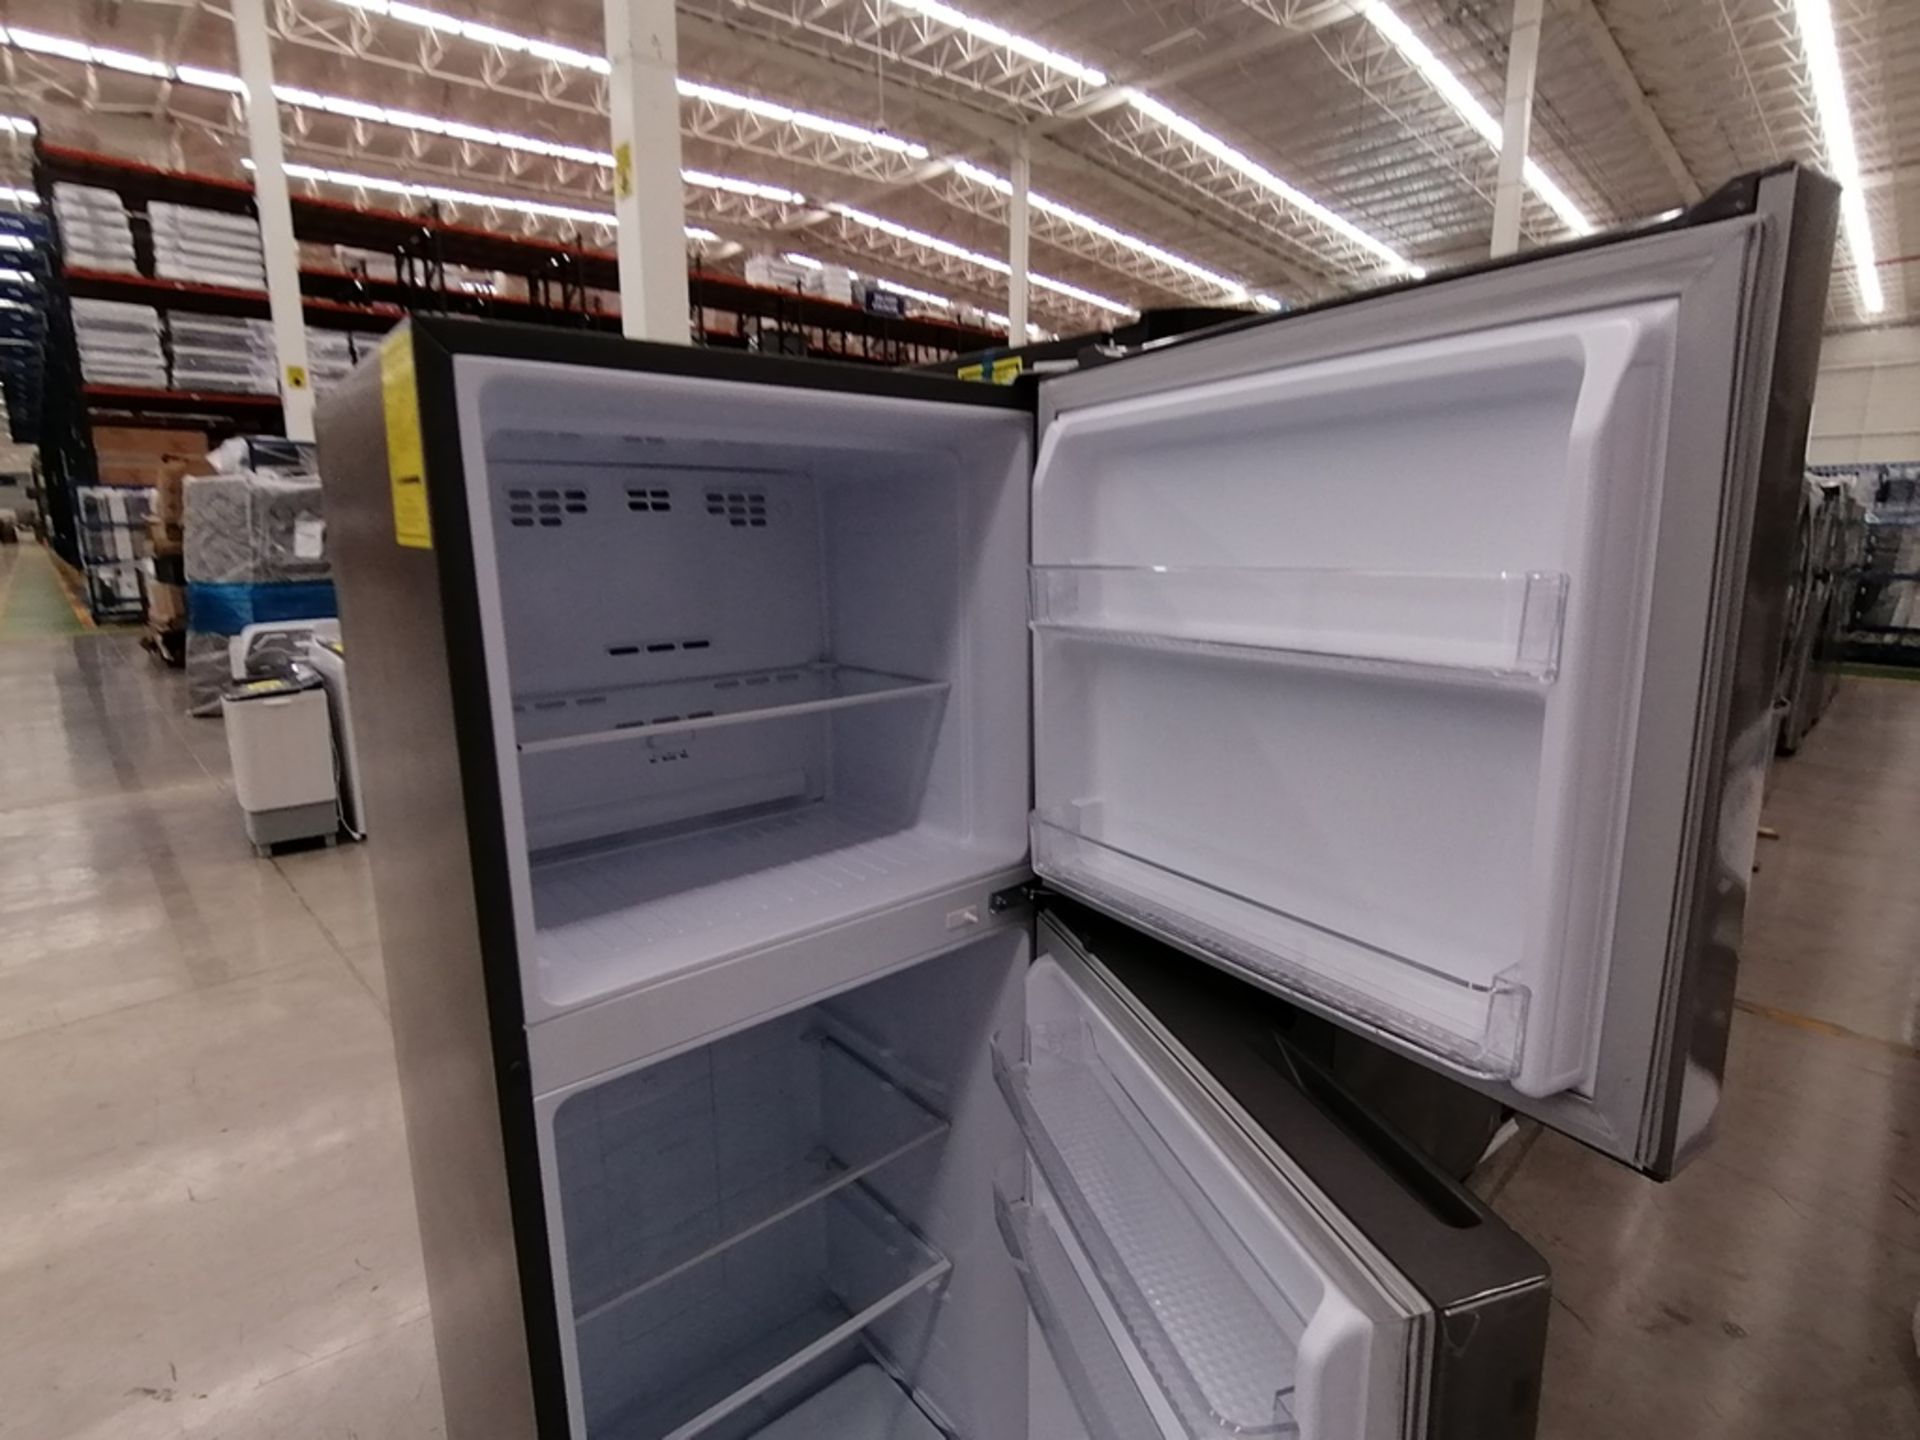 Lote de 2 refrigeradores incluye: 1 Refrigerador, Marca Winia, Modelo DFR32210GNV, Serie MR219N1206 - Image 4 of 15